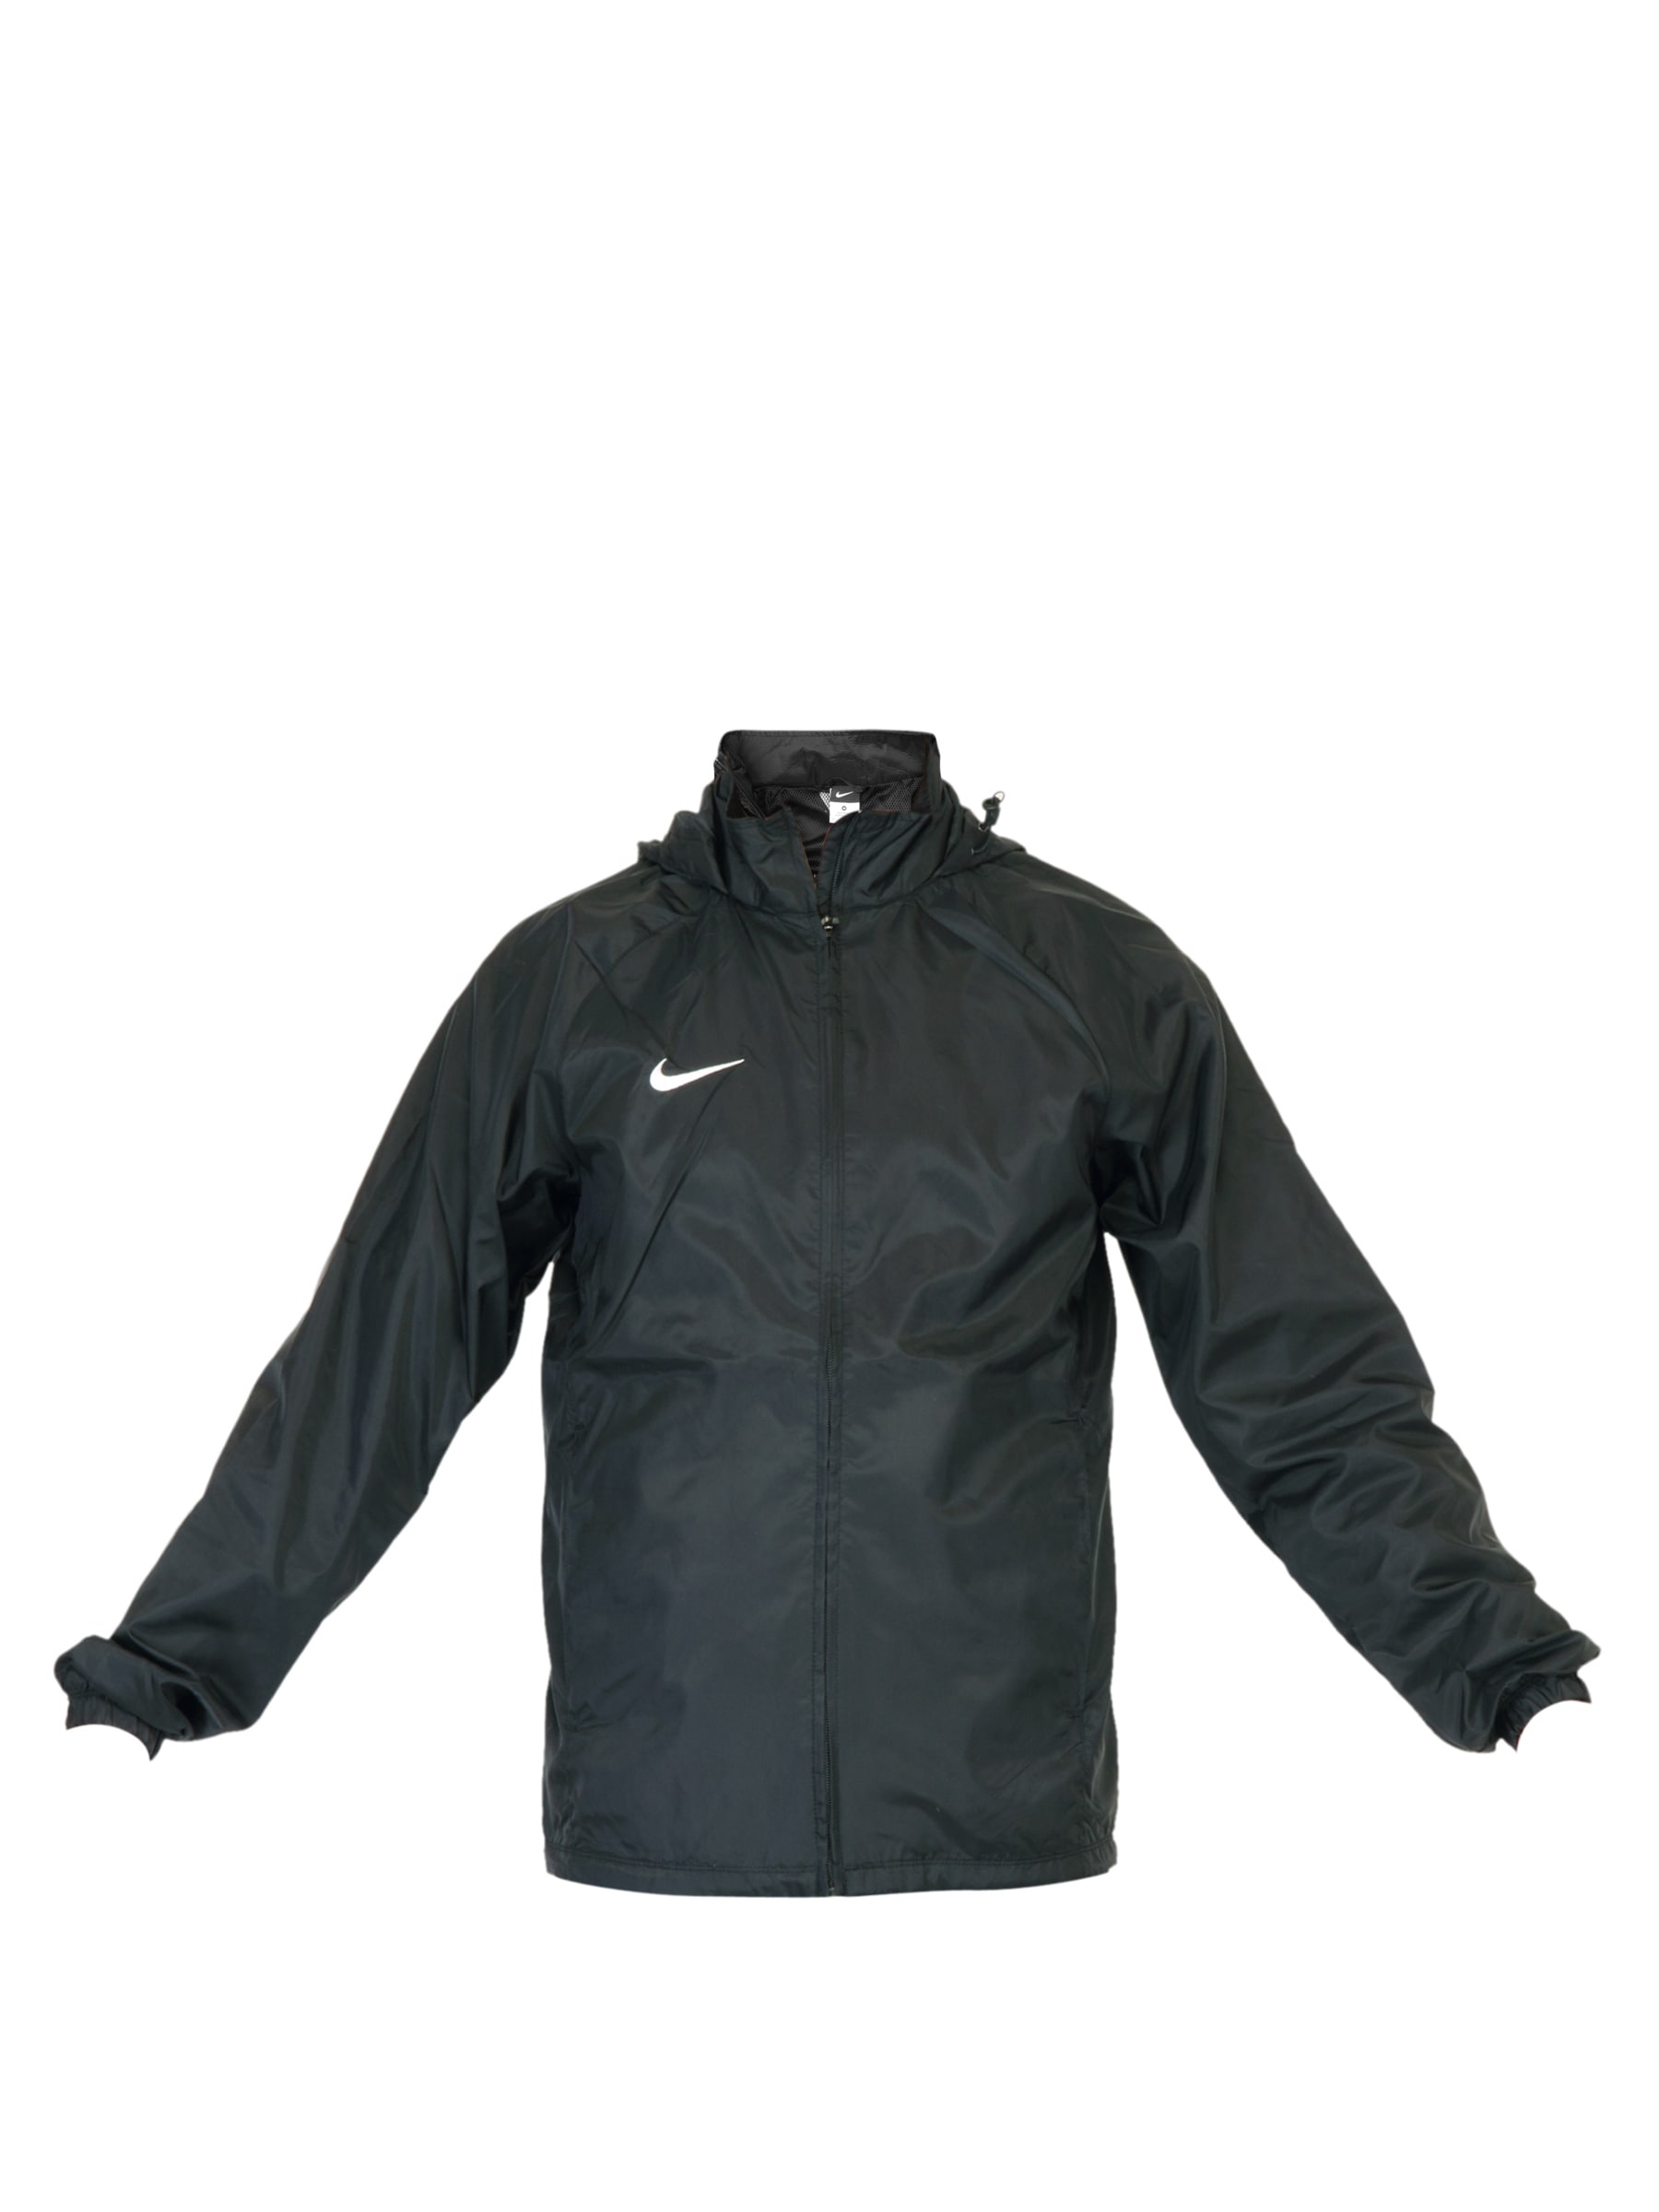 Nike Men Solid Black Jackets